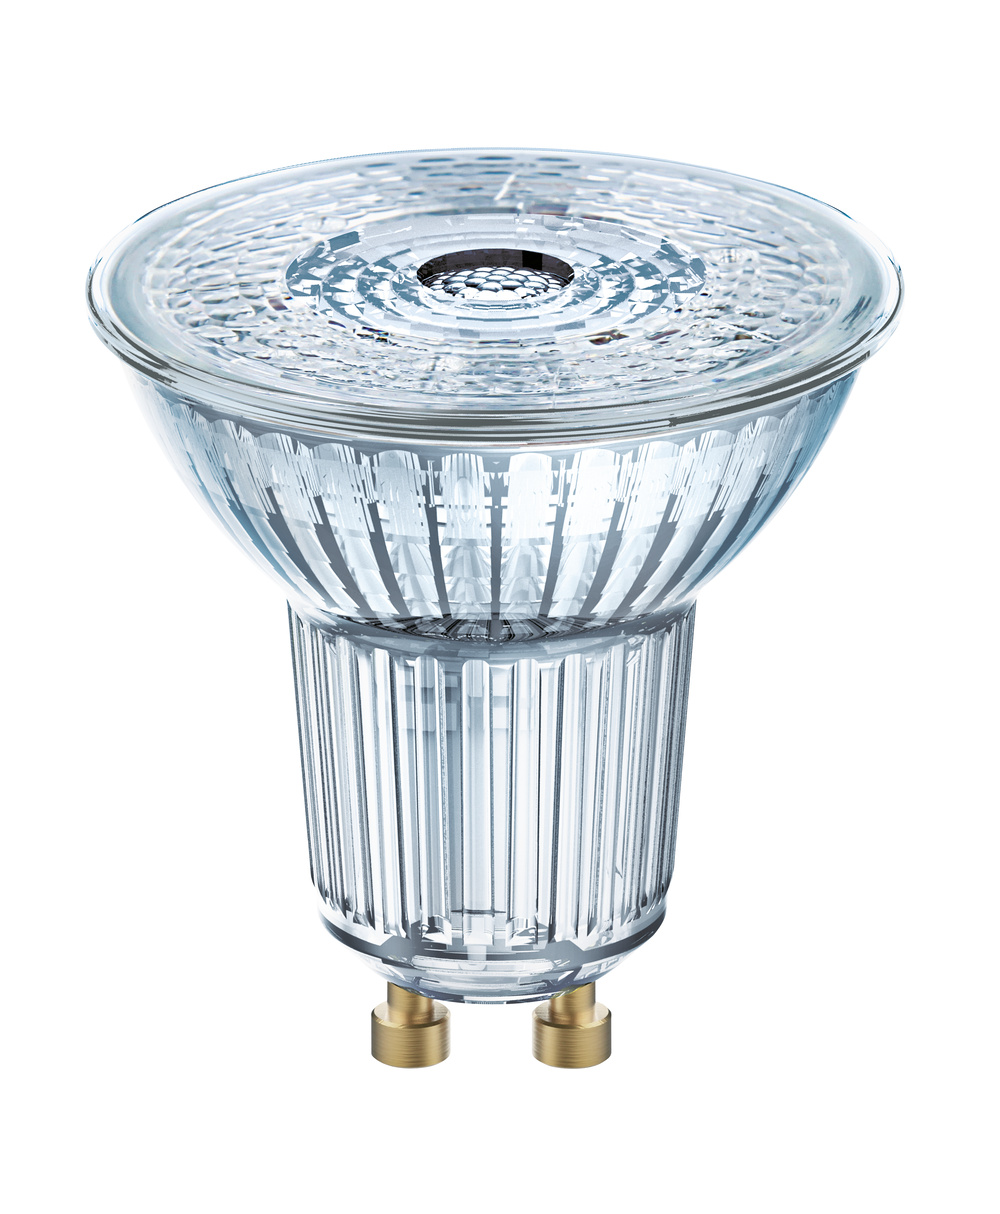 Ledvance LED lamp LED PAR16 P 2.6W 840 GU10 – 4099854044755 – replacement for 35 W - 4099854044755